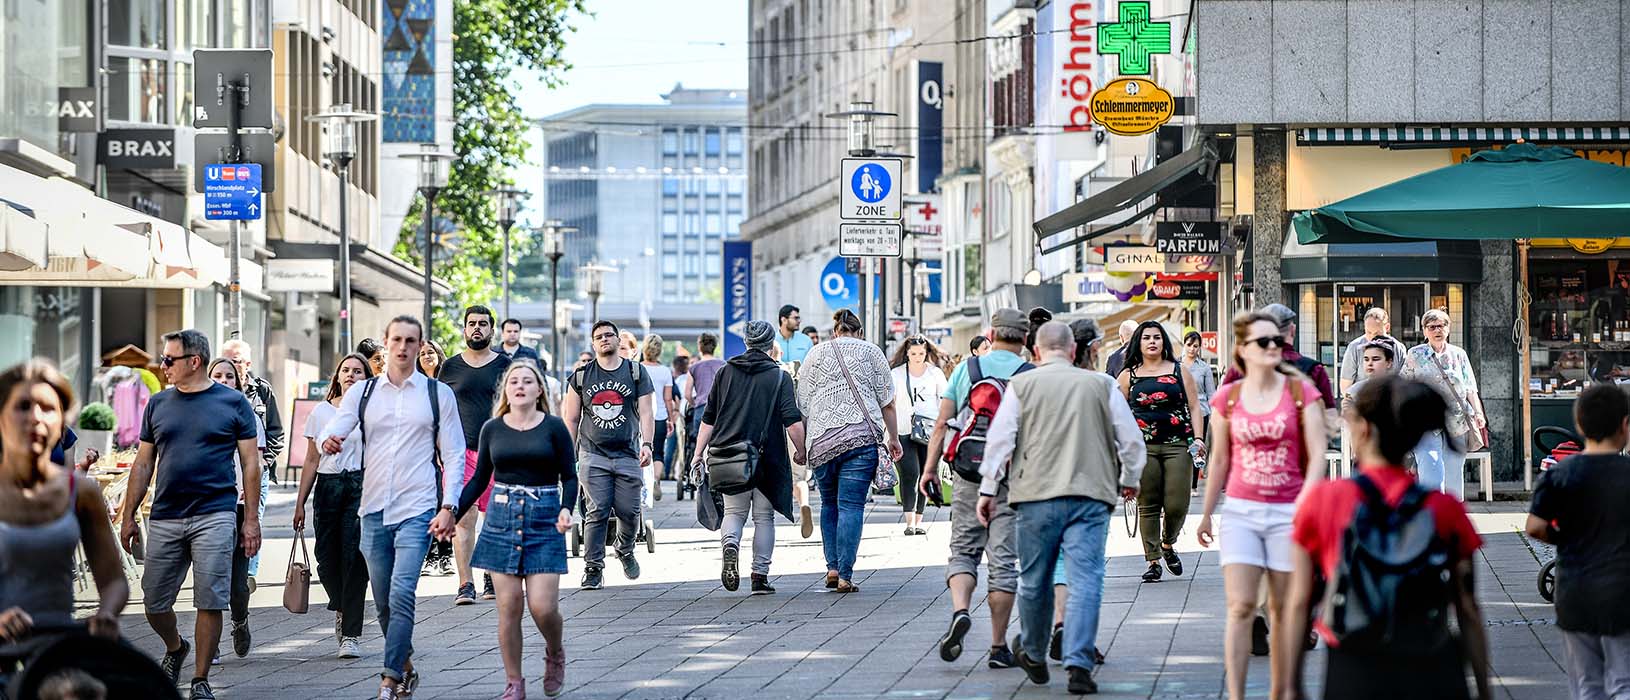 Nur wenige Geschäfte aus der Innenstadt, wie hier in Essen, spielen virtuos auf der Klaviatur der sozialen Netzwerke. Foto: Kerstin Kokoska/FUNKE Foto Services